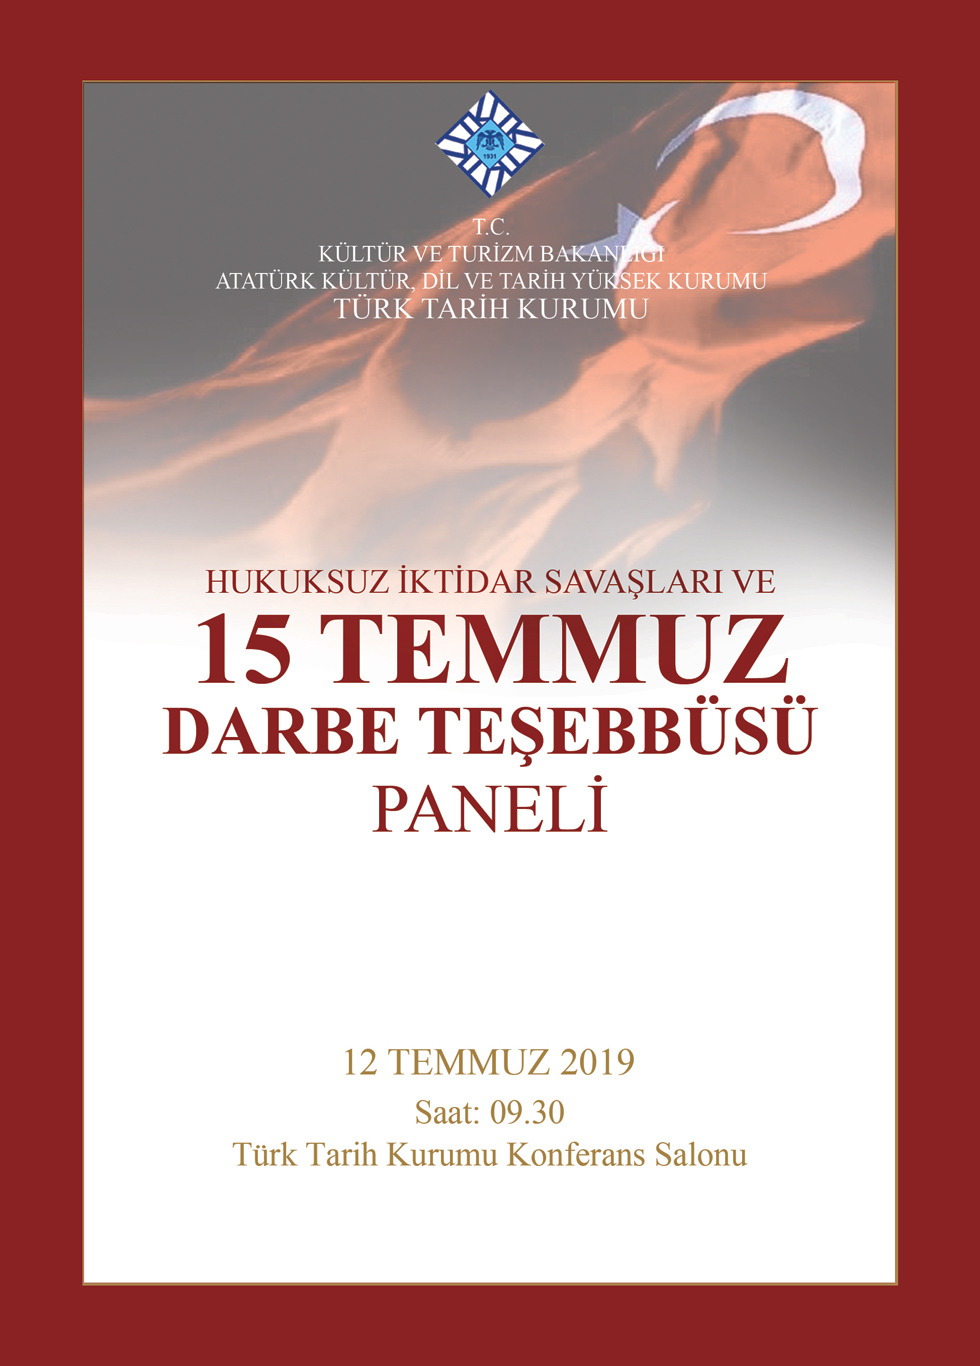 Türk Tarih Kurumundan 15 Temmuz Paneli, 12 Temmuz 2019